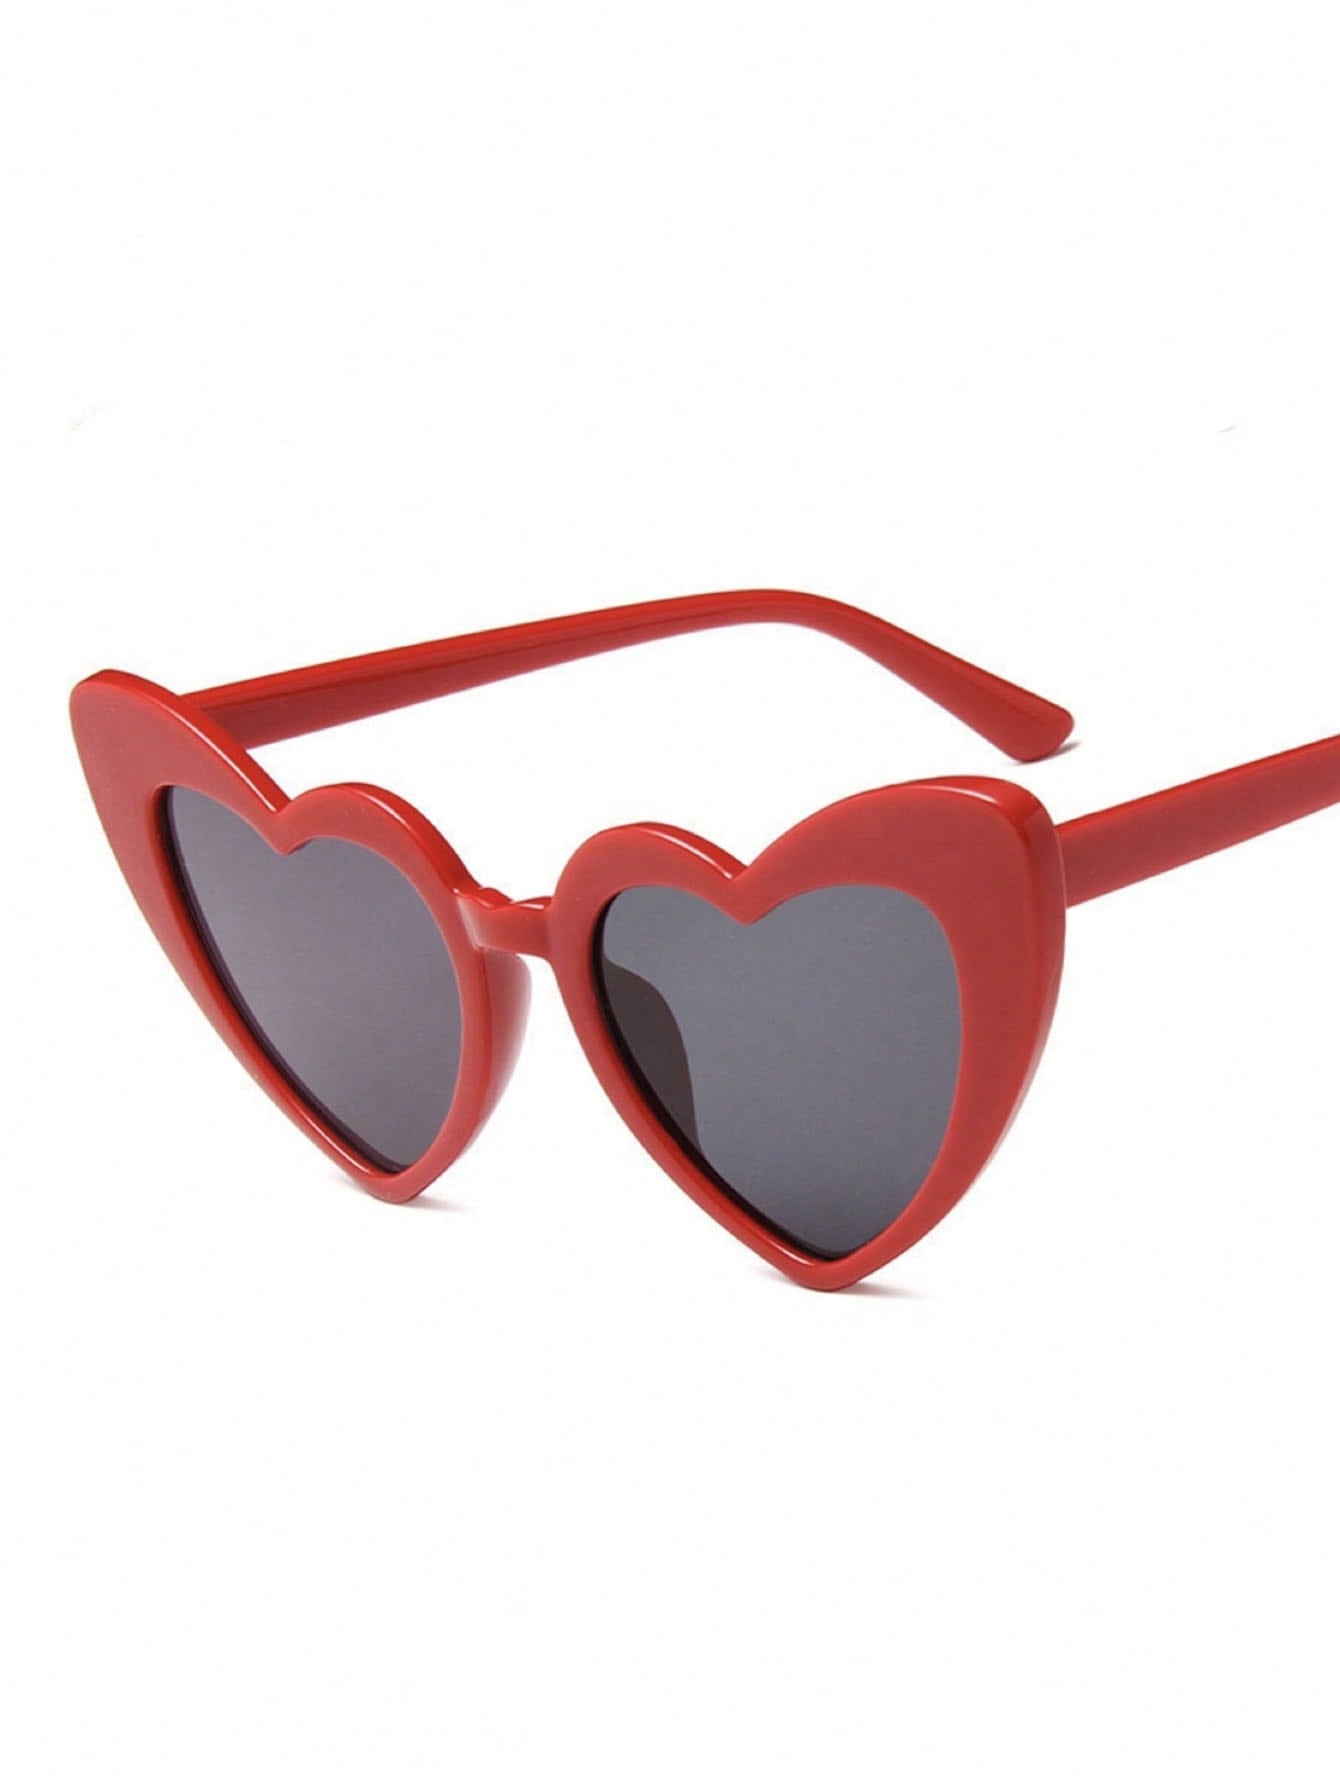 1шт красные модные очки в форме сердца с серыми линзами 20 шт 38 мм модные металлические пряжки в форме сердца